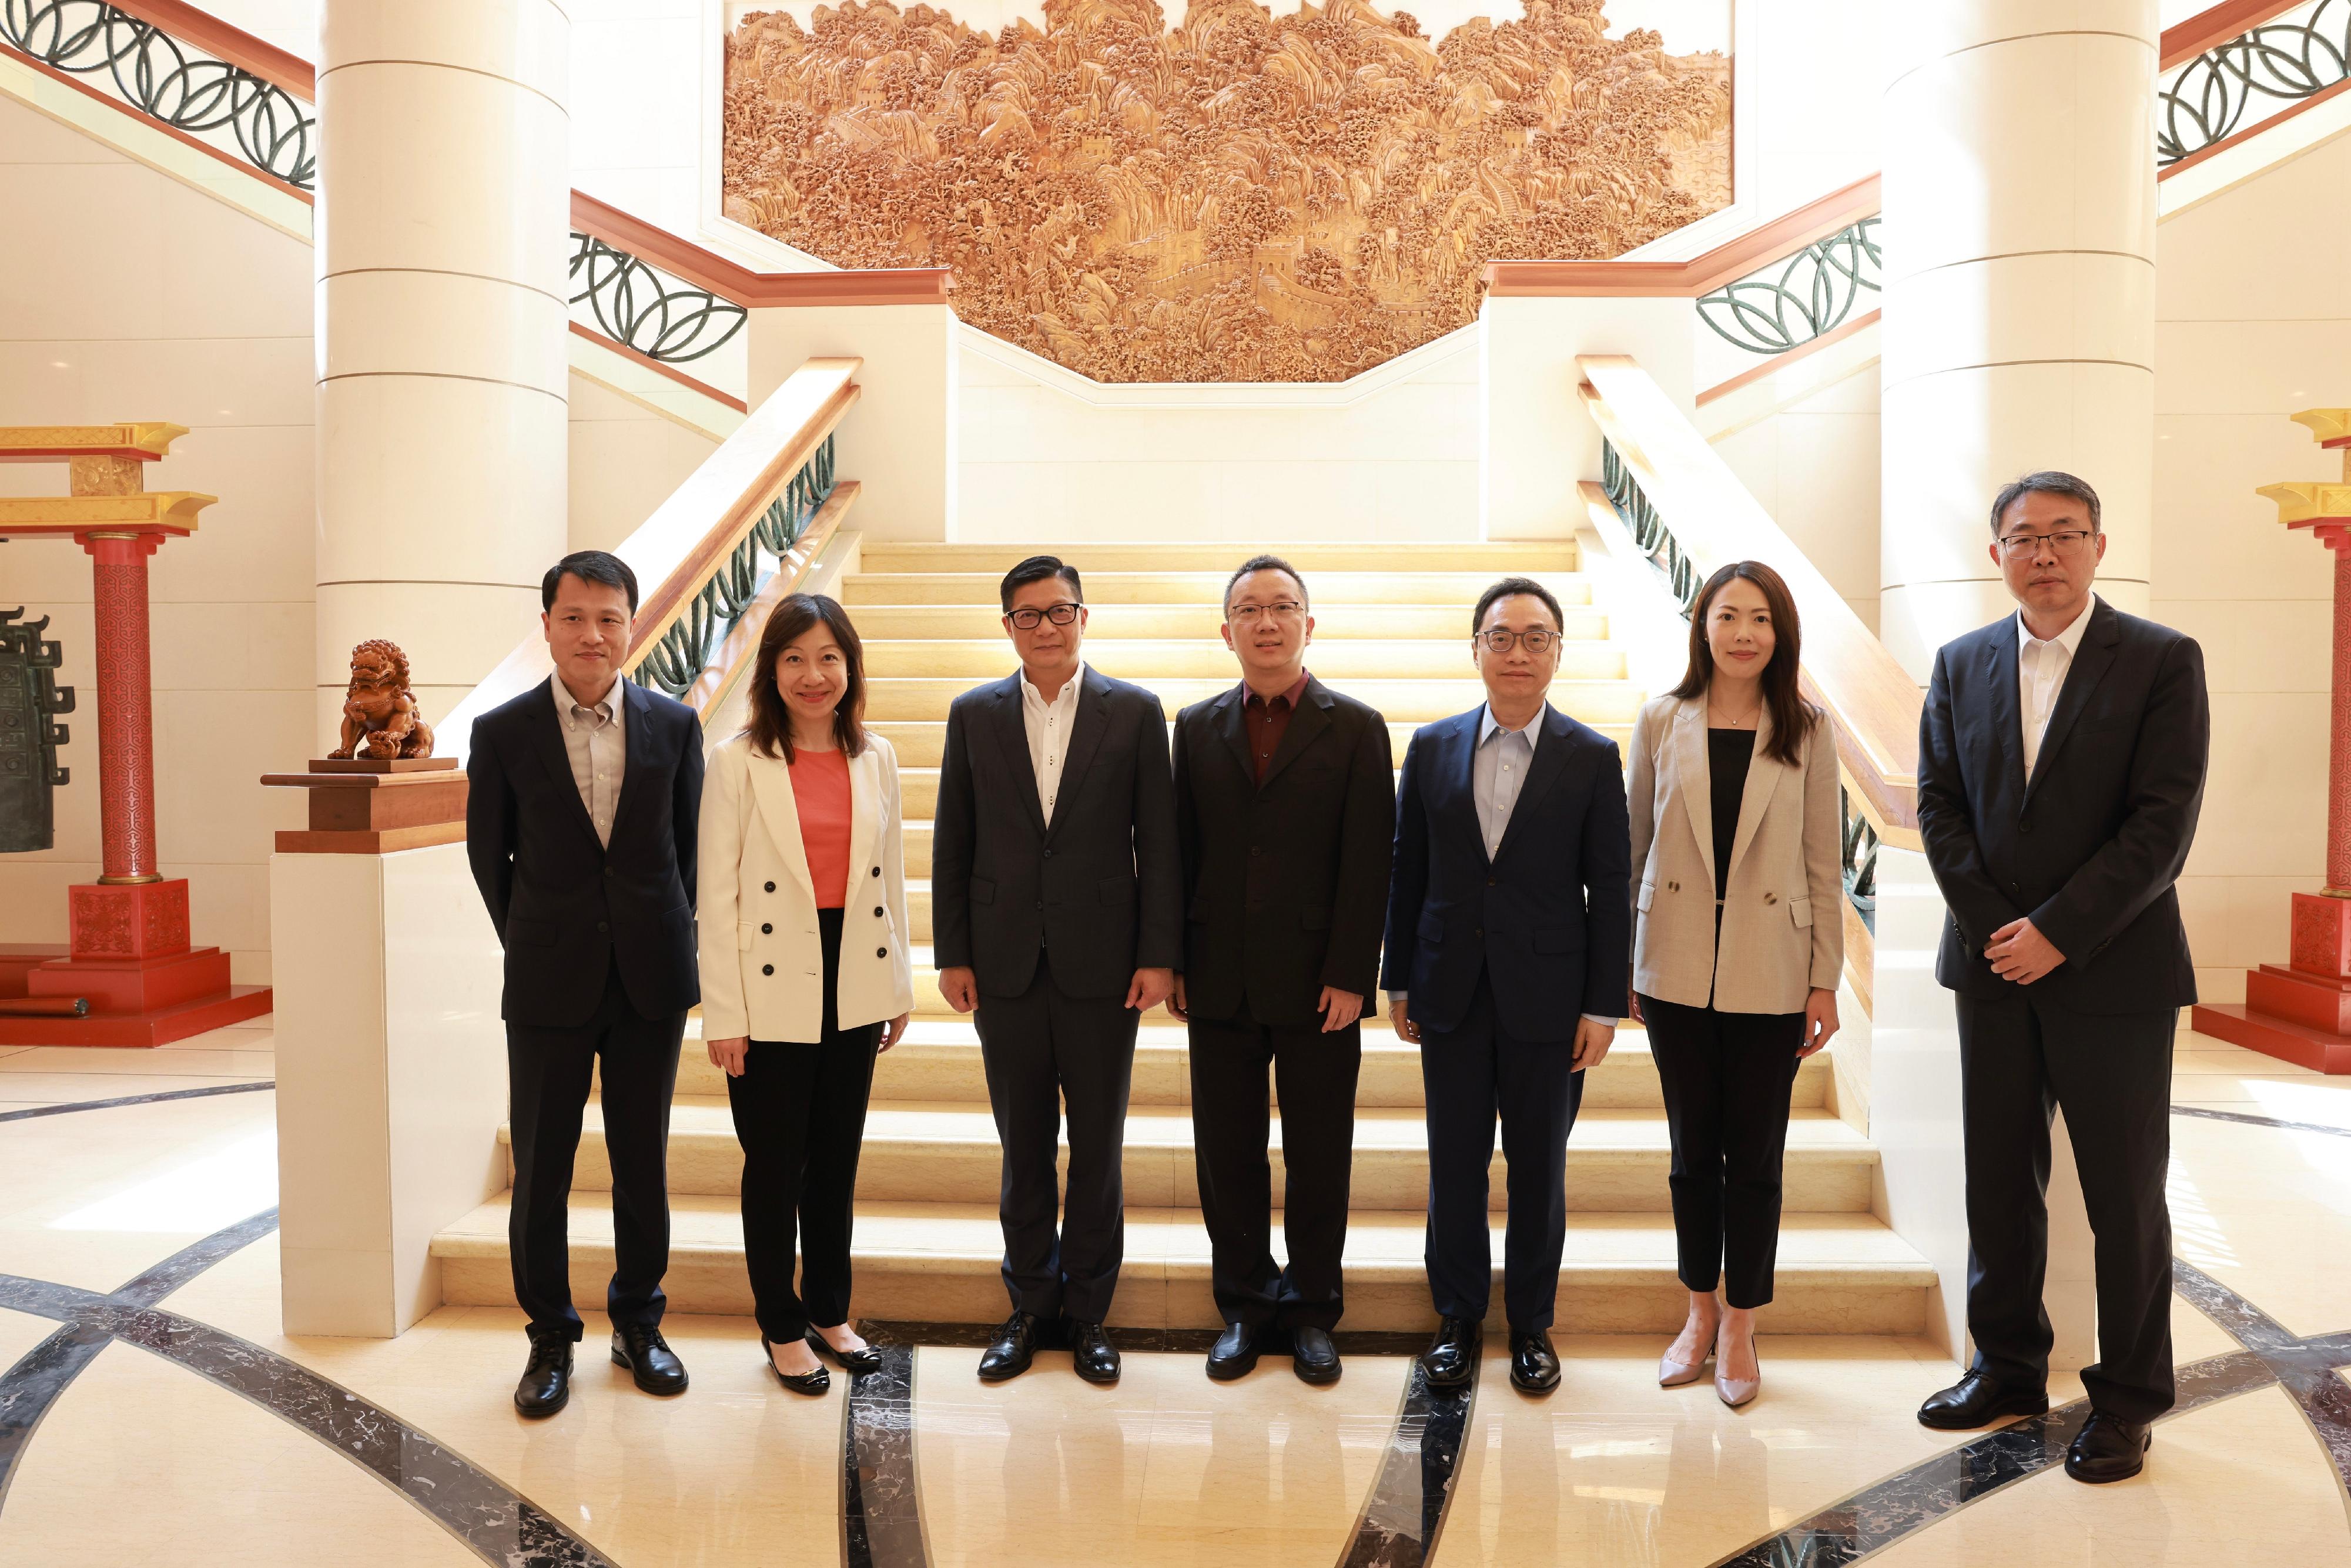 保保安局局长邓炳强今日（八月三十日）展开在新加坡的访问行程。图示邓炳强（左三）与中国驻新加坡临时代办大使朱憬（中）会面后合照。